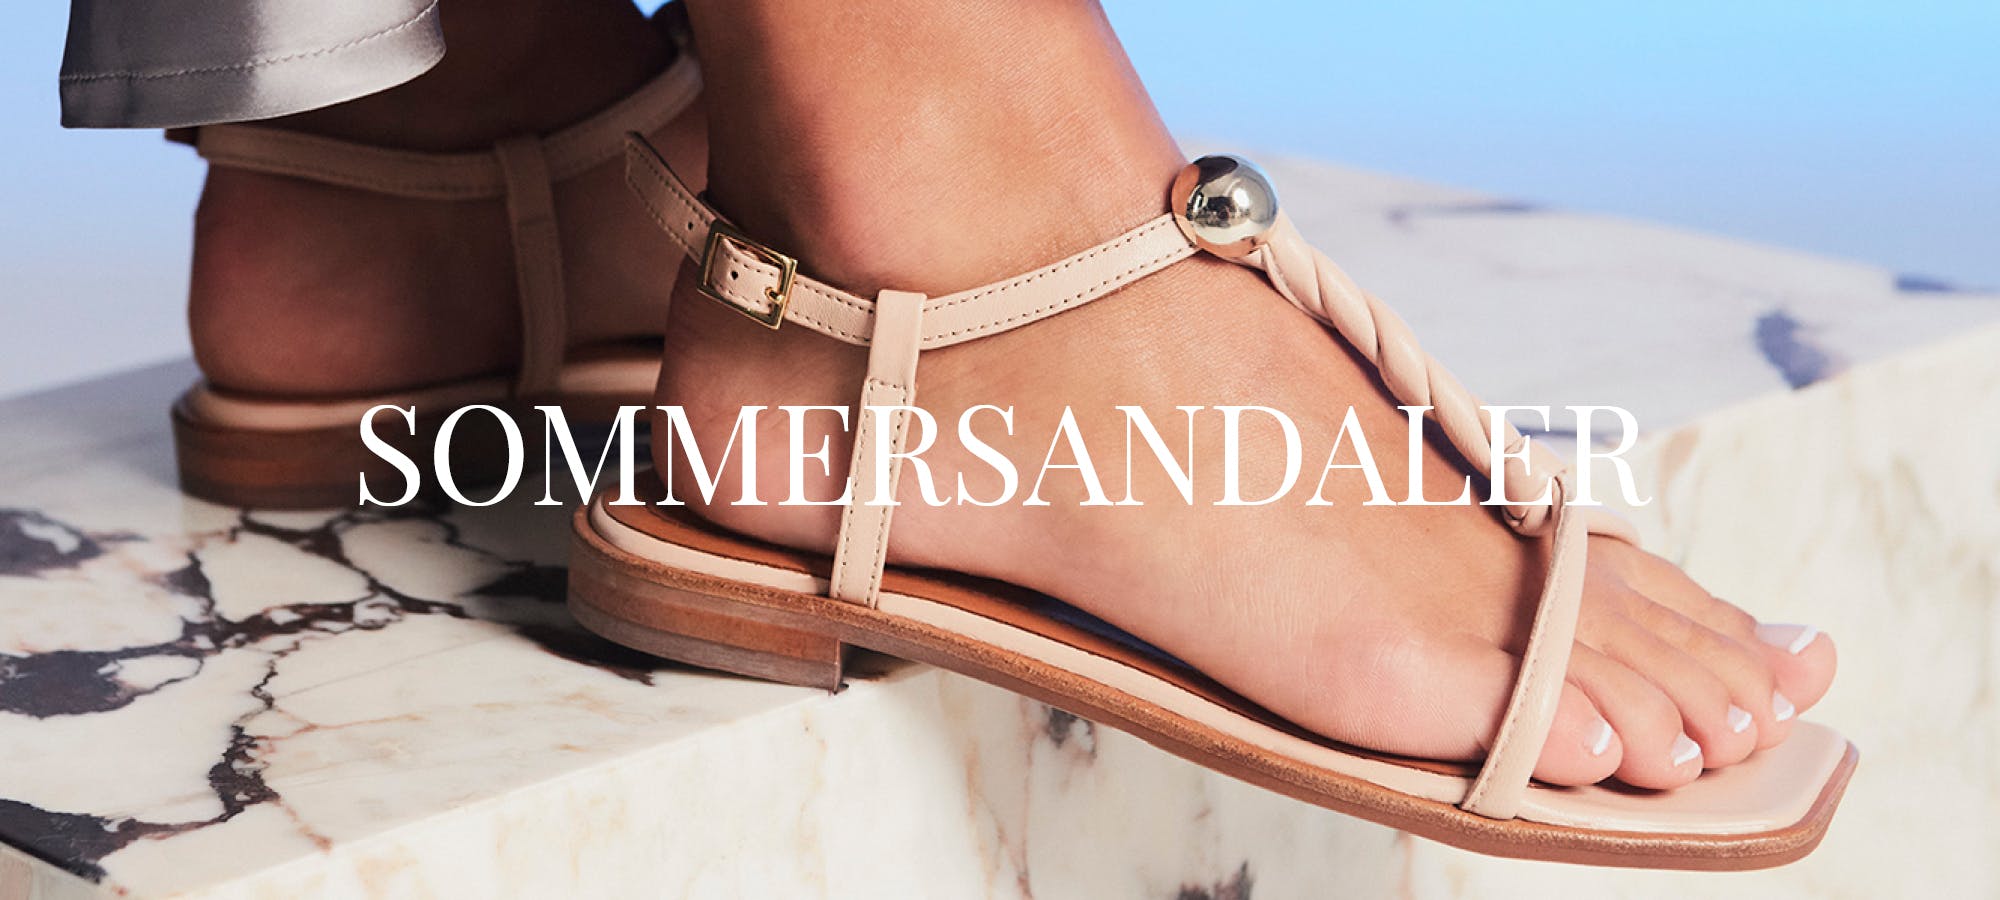 Sommersandaler | Find sandaler til sommeren |